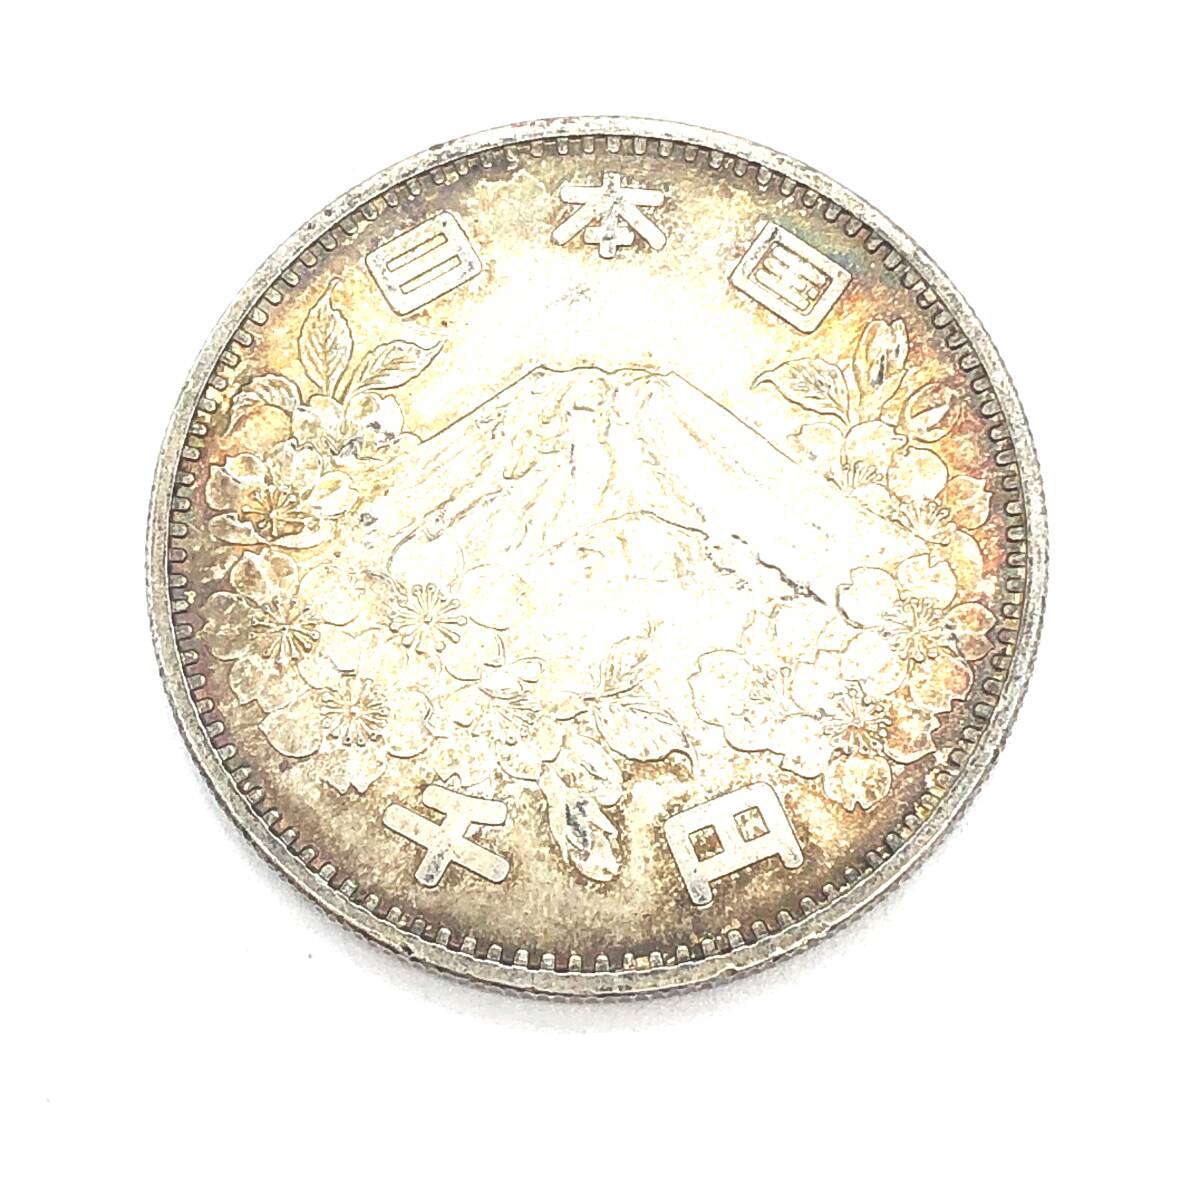 【OP-02】【貴重・コレクション】1964年 昭和39年 東京オリンピック 1000円銀貨/日本古銭 硬貨の画像2